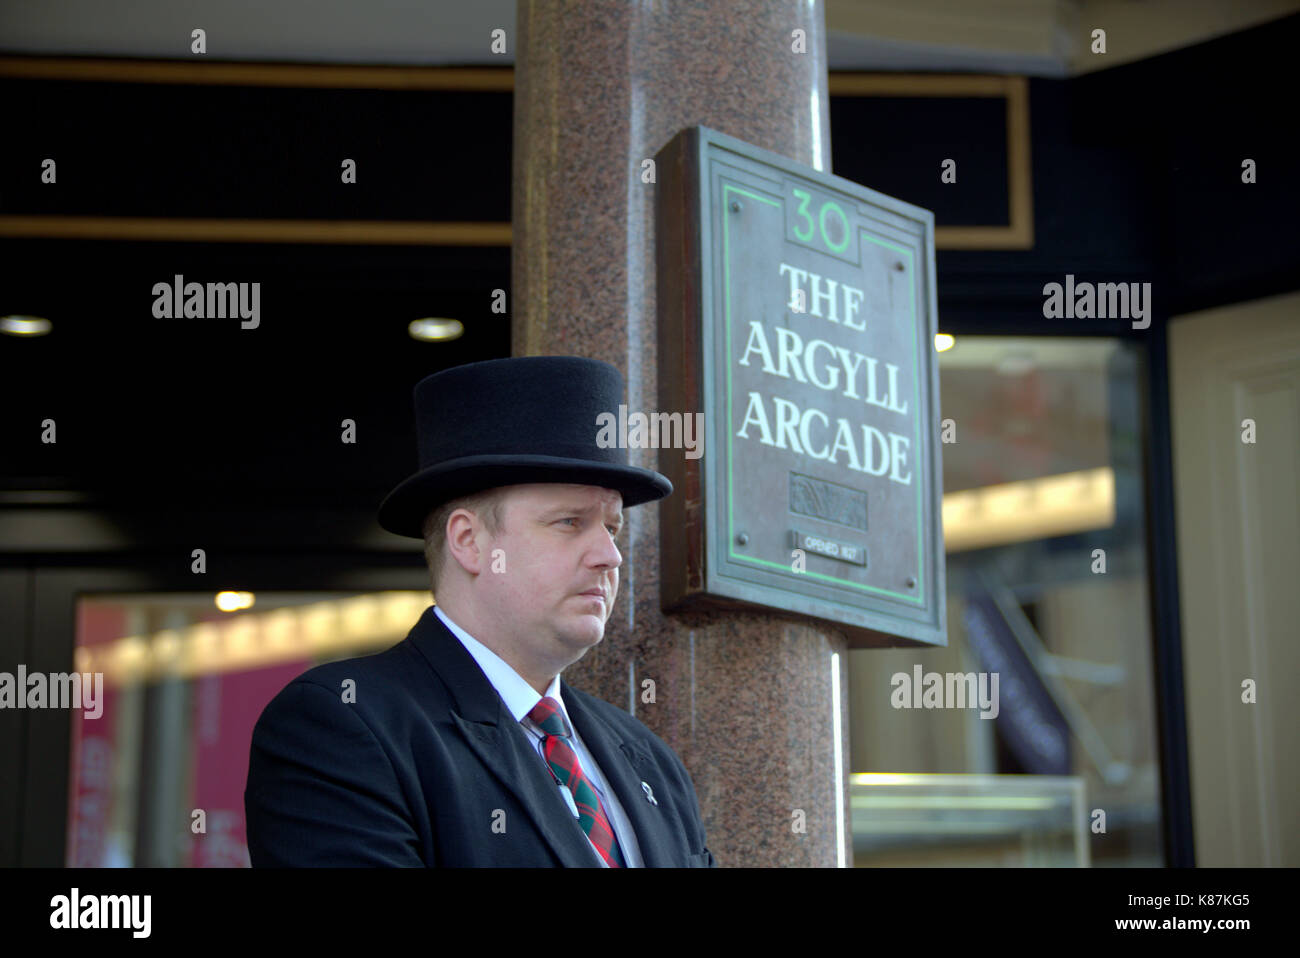 Argyle Arcade zeichen Einkaufszentrum die älteste Mall in Glasgow Eingang mit uniformierten Portier Stockfoto